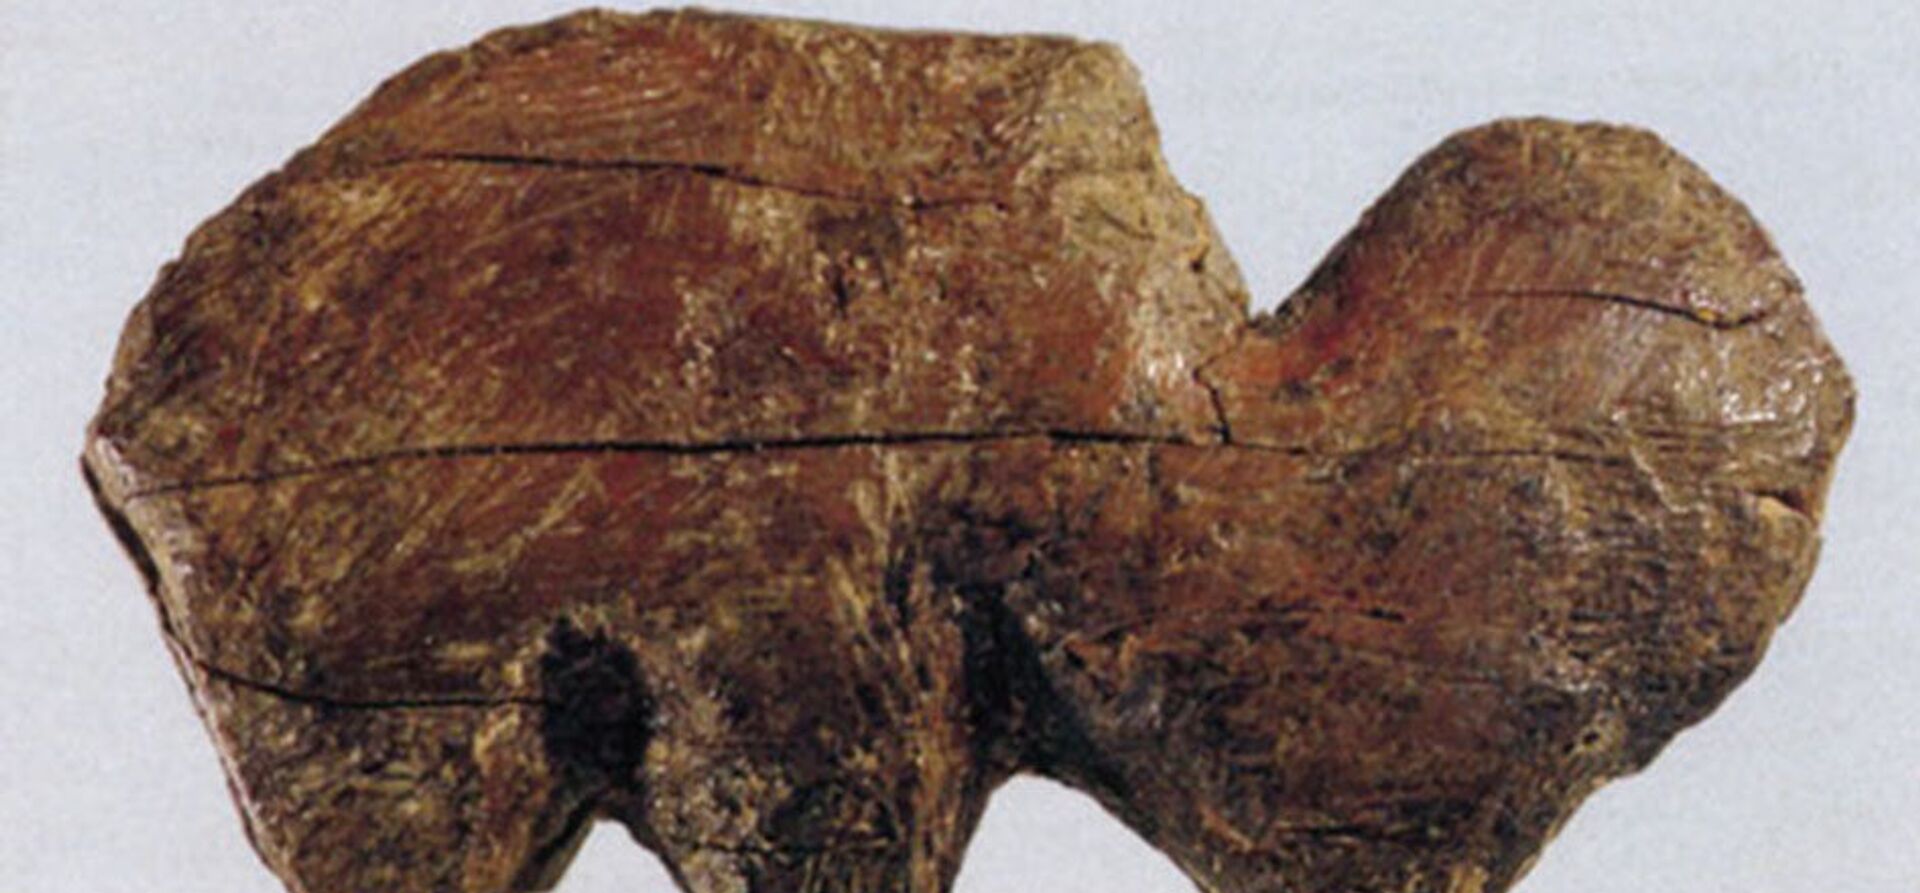 Kljova mamuta pronađena u Sibiru 2020. godine - Sputnik Srbija, 1920, 27.08.2020